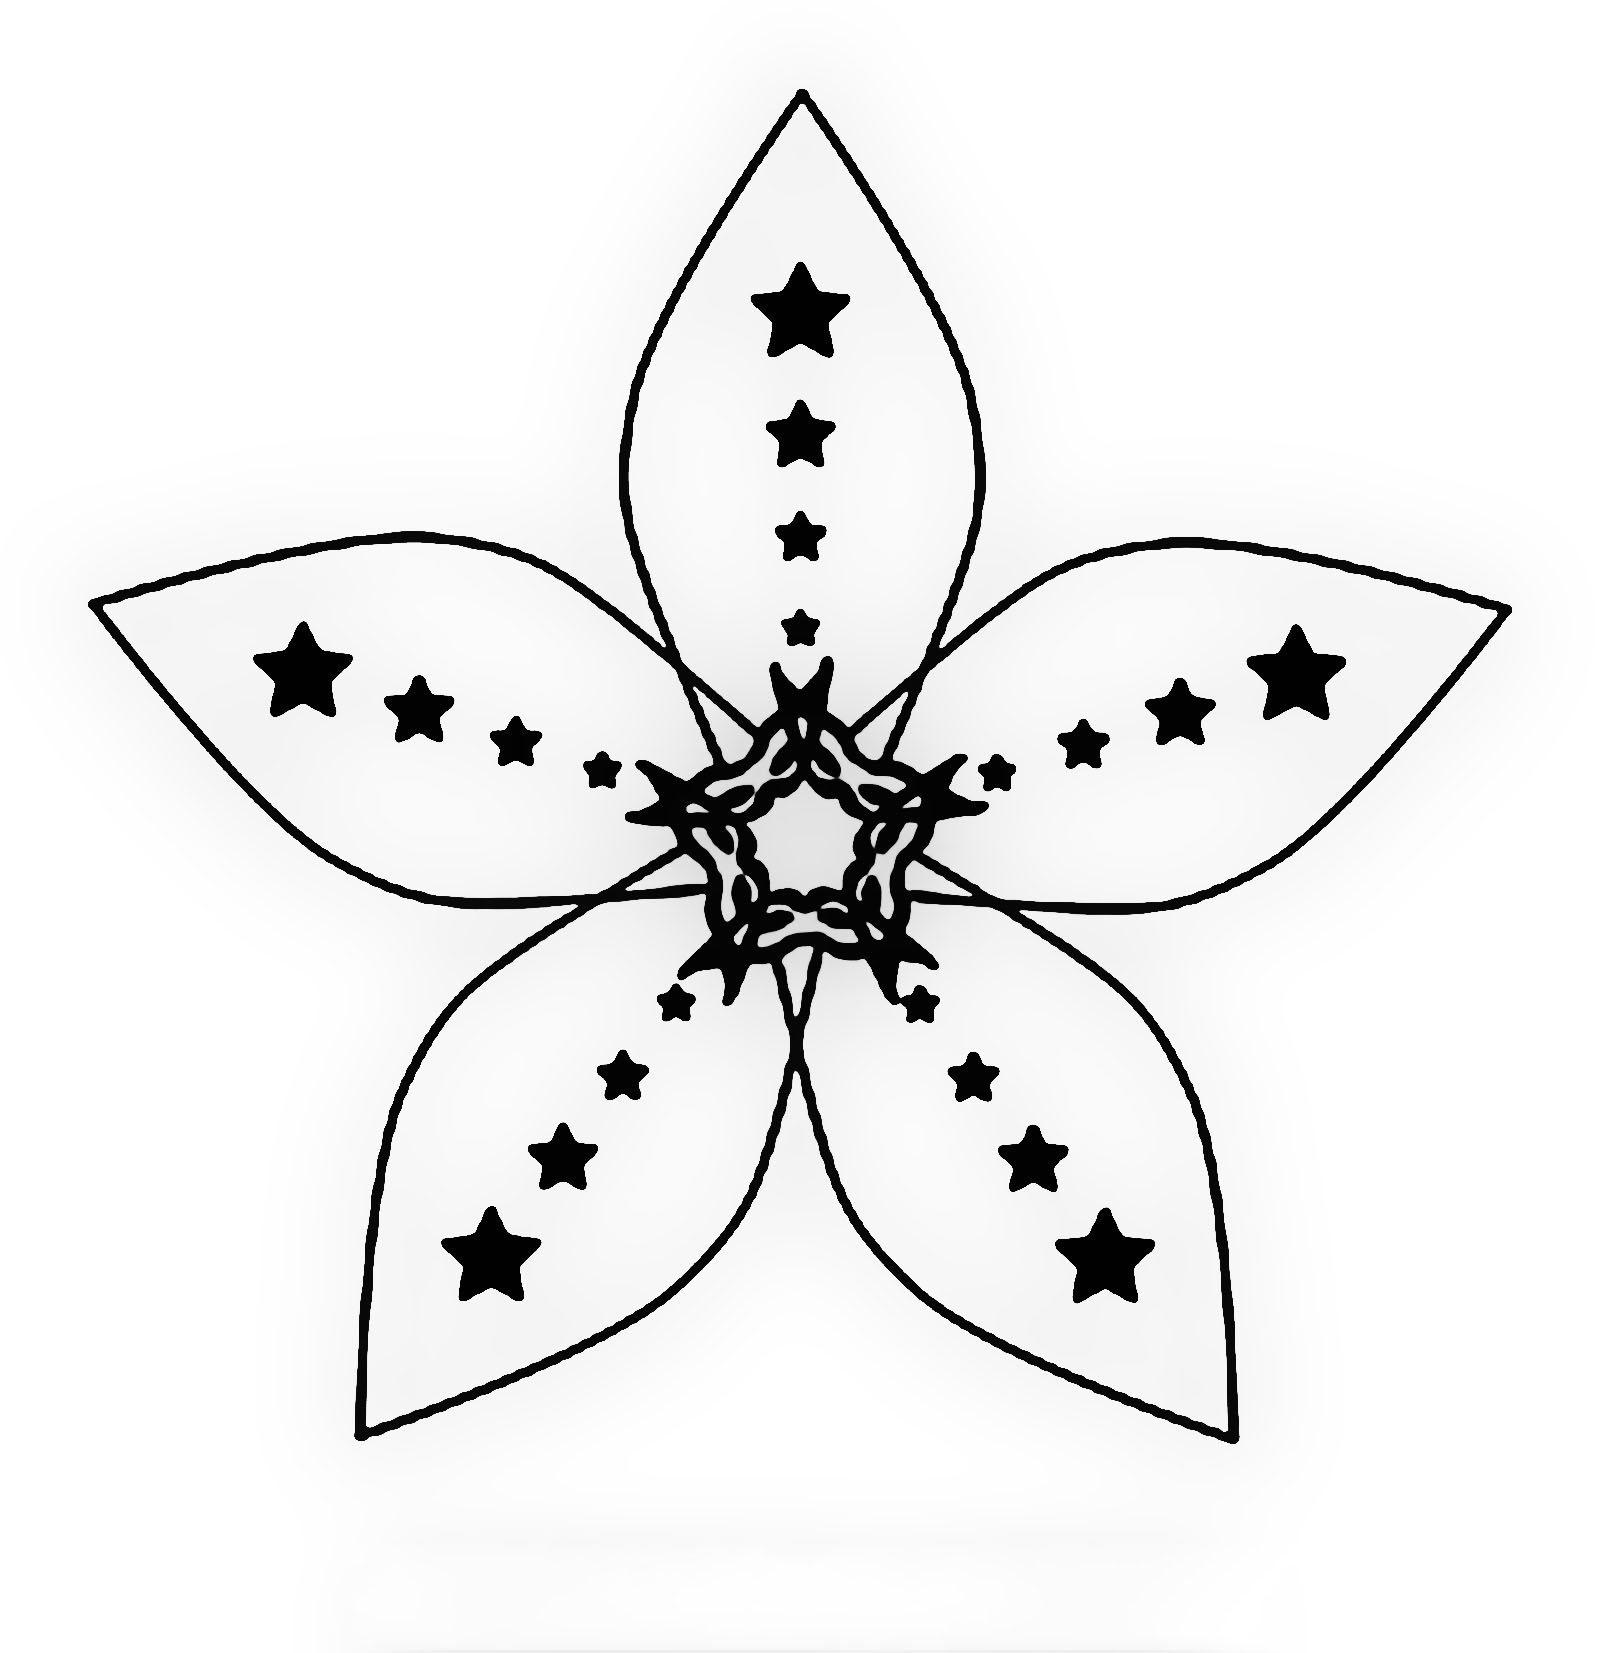 Link dowload 55+ tranh tô màu bông hoa 5 cánh đẹp nhất 2023